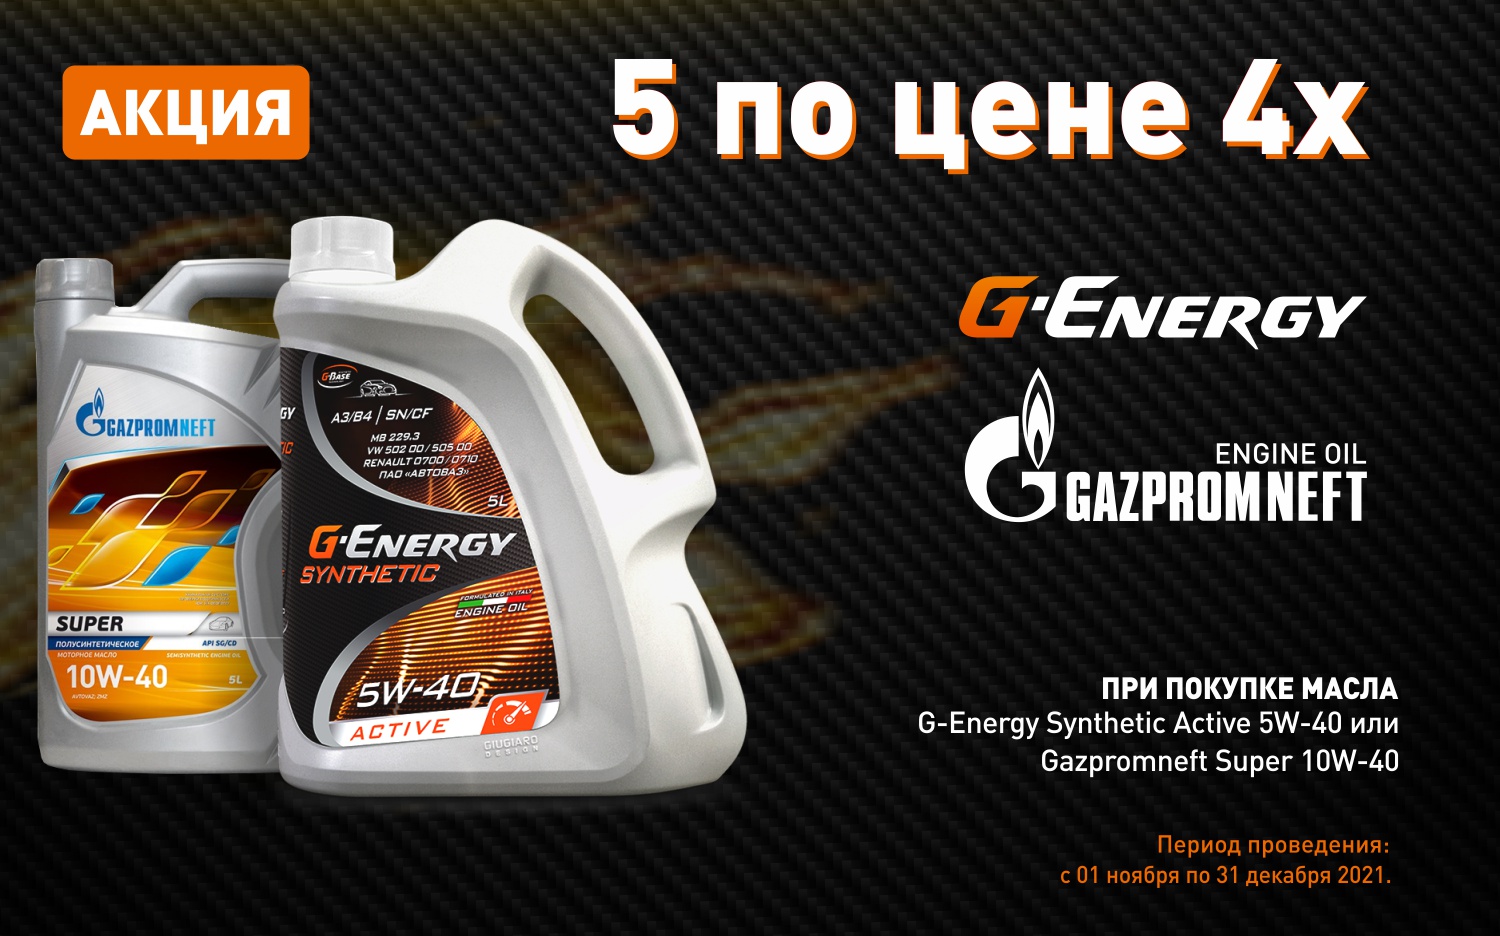 Акция на масло G-Energy и Gazpromneft!